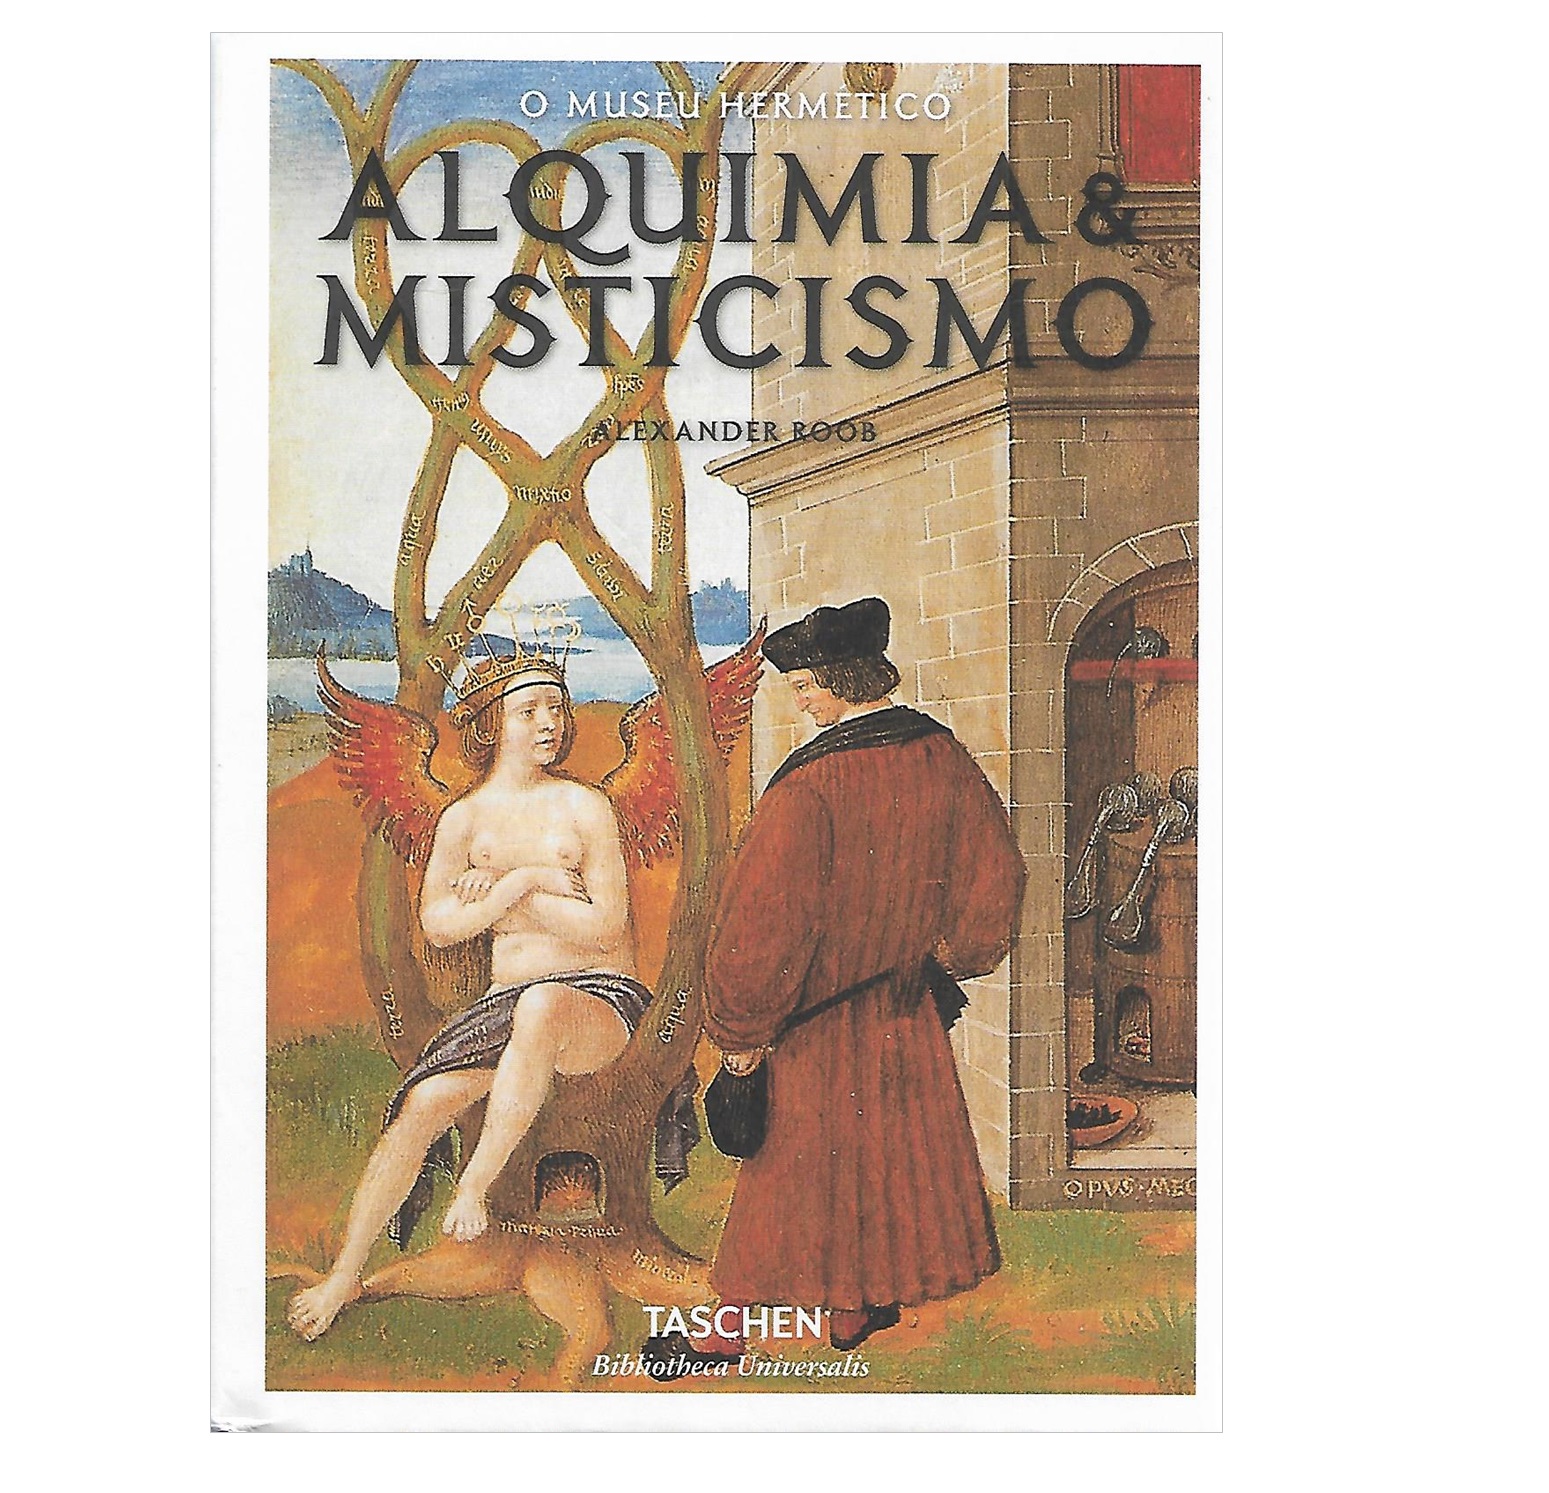  O MUSEU HERMÉTICO: ALQUIMIA & MISTICISMO